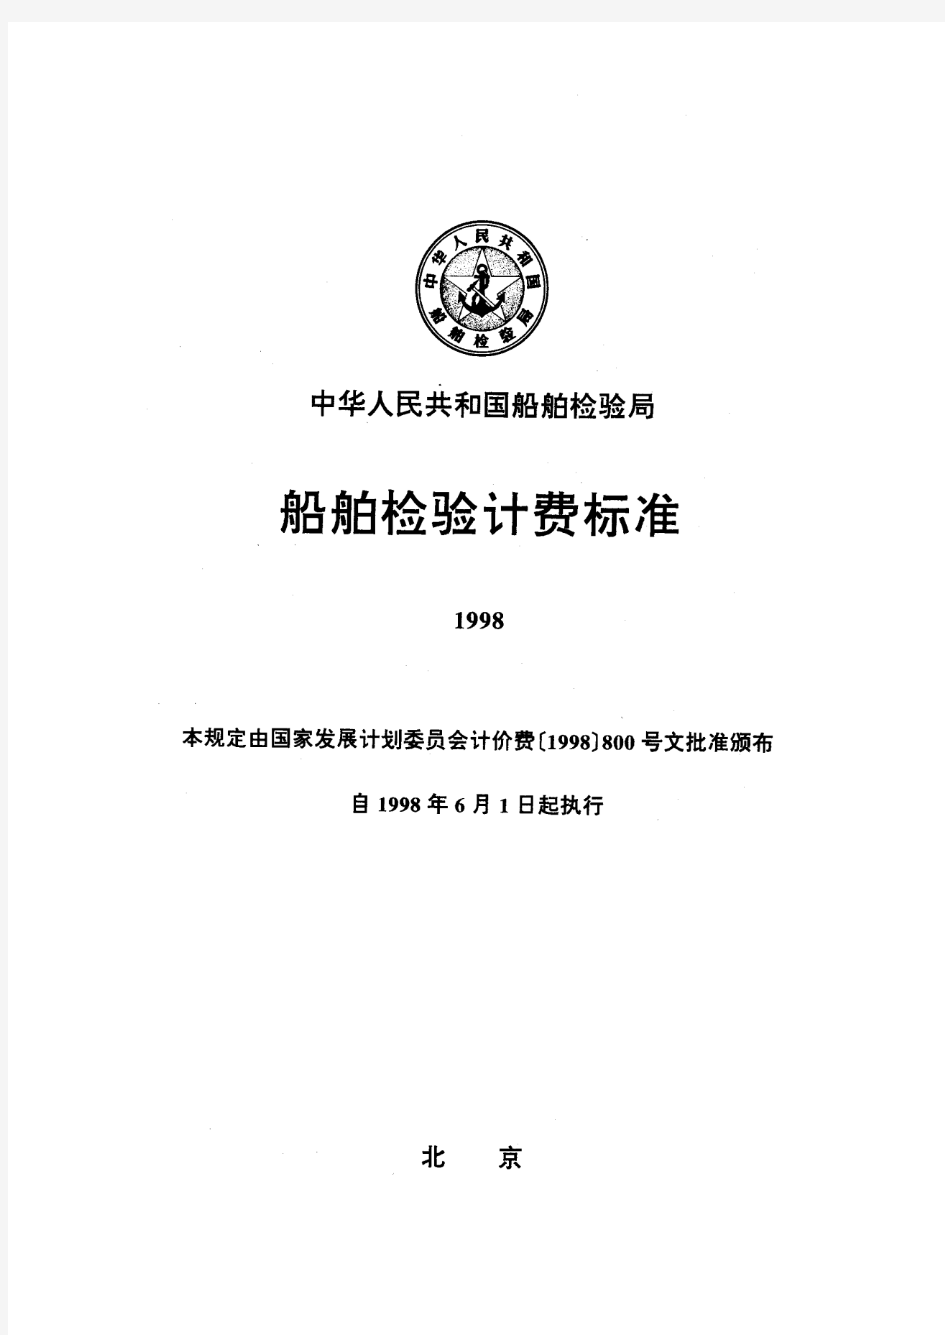 船舶检验计费标准(1998)